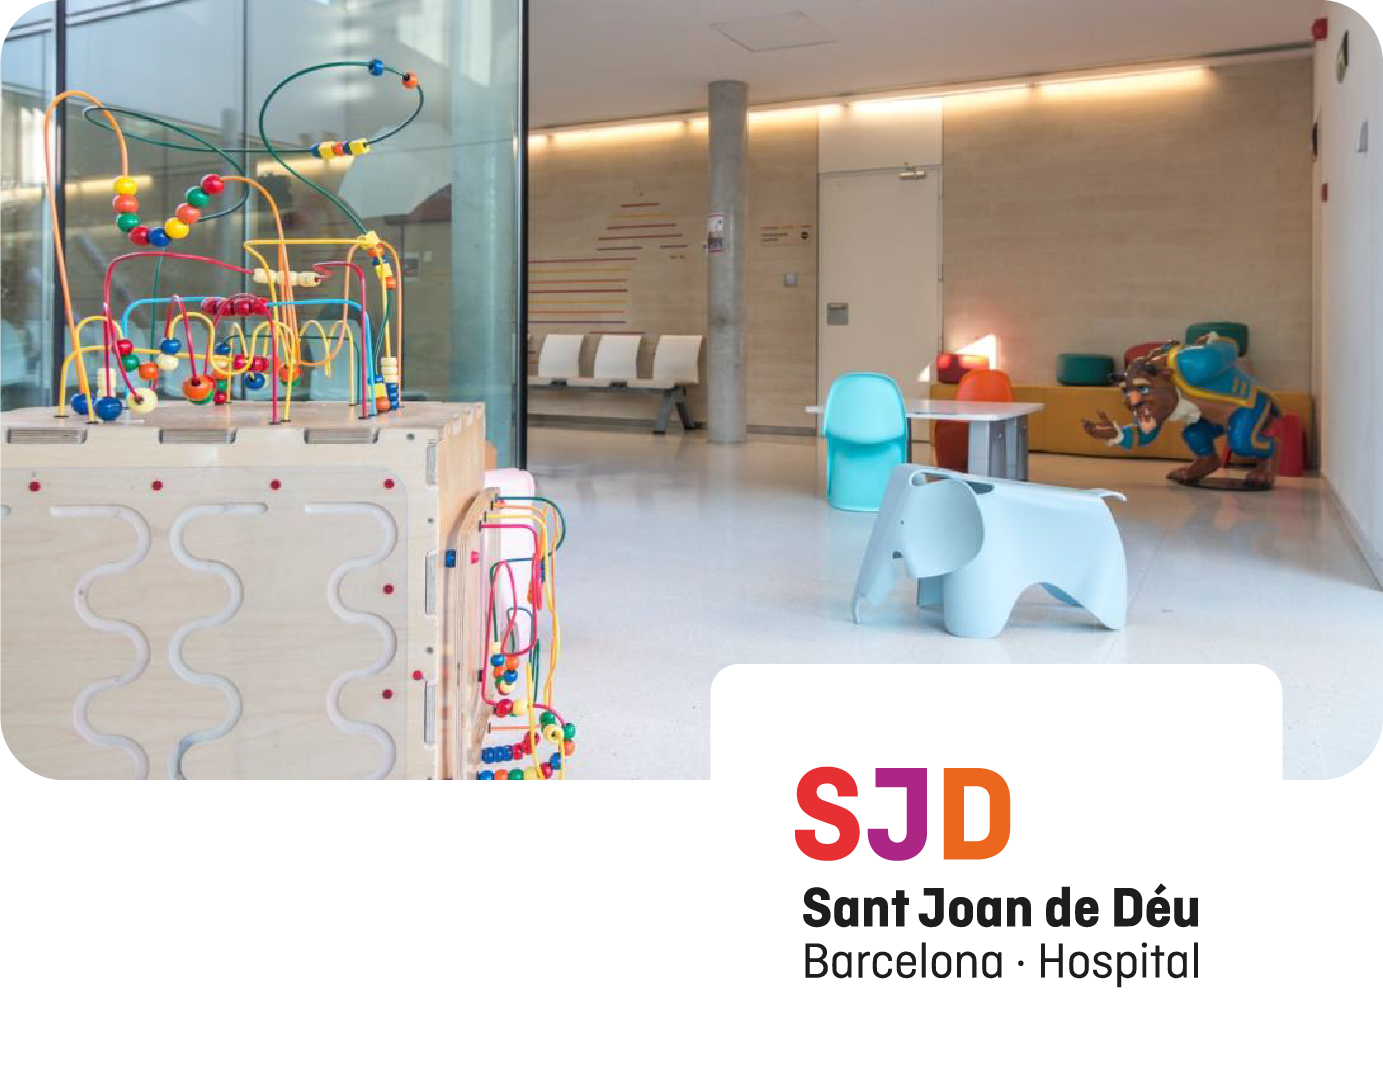 En la imagen aparece una sala del hospital Sant Joan de Deu con algunos juguetes infantiles y el logo del hospital